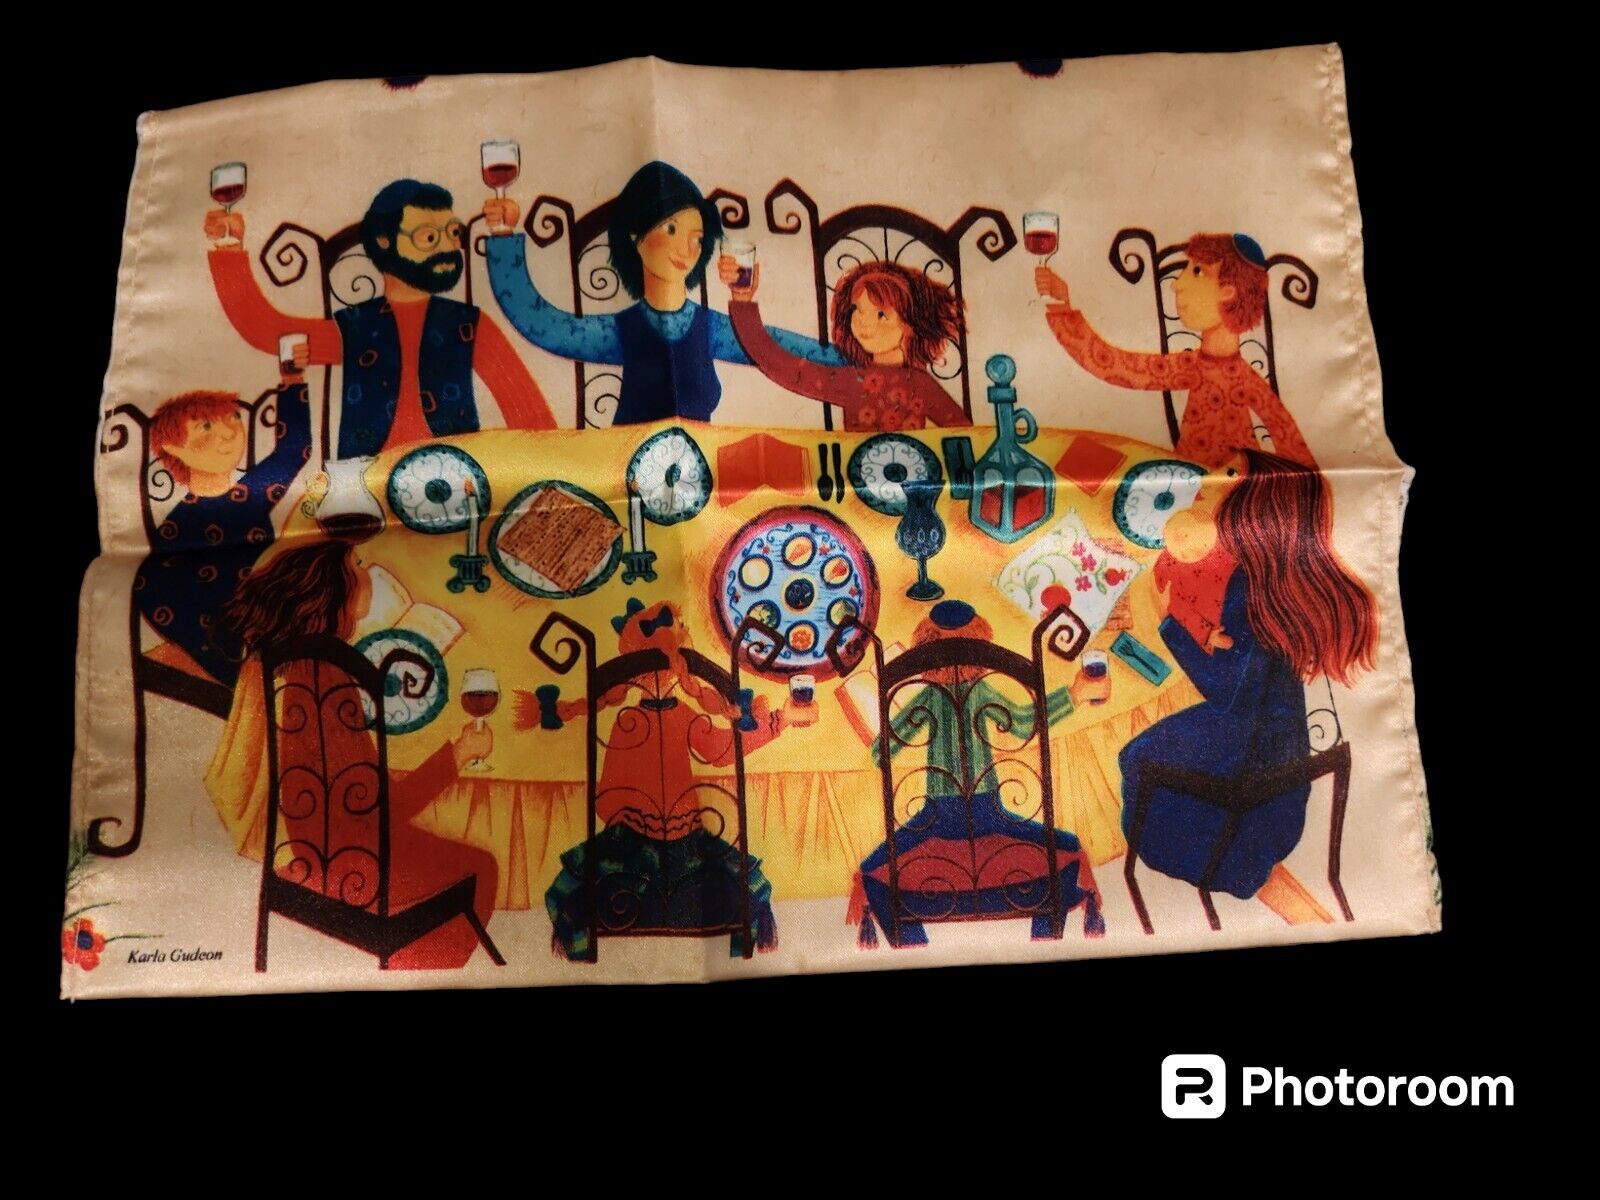 Vintage Jewish Silk Passover Bag Hide The Matzo Matzah Afikomen by Karla Gudeon